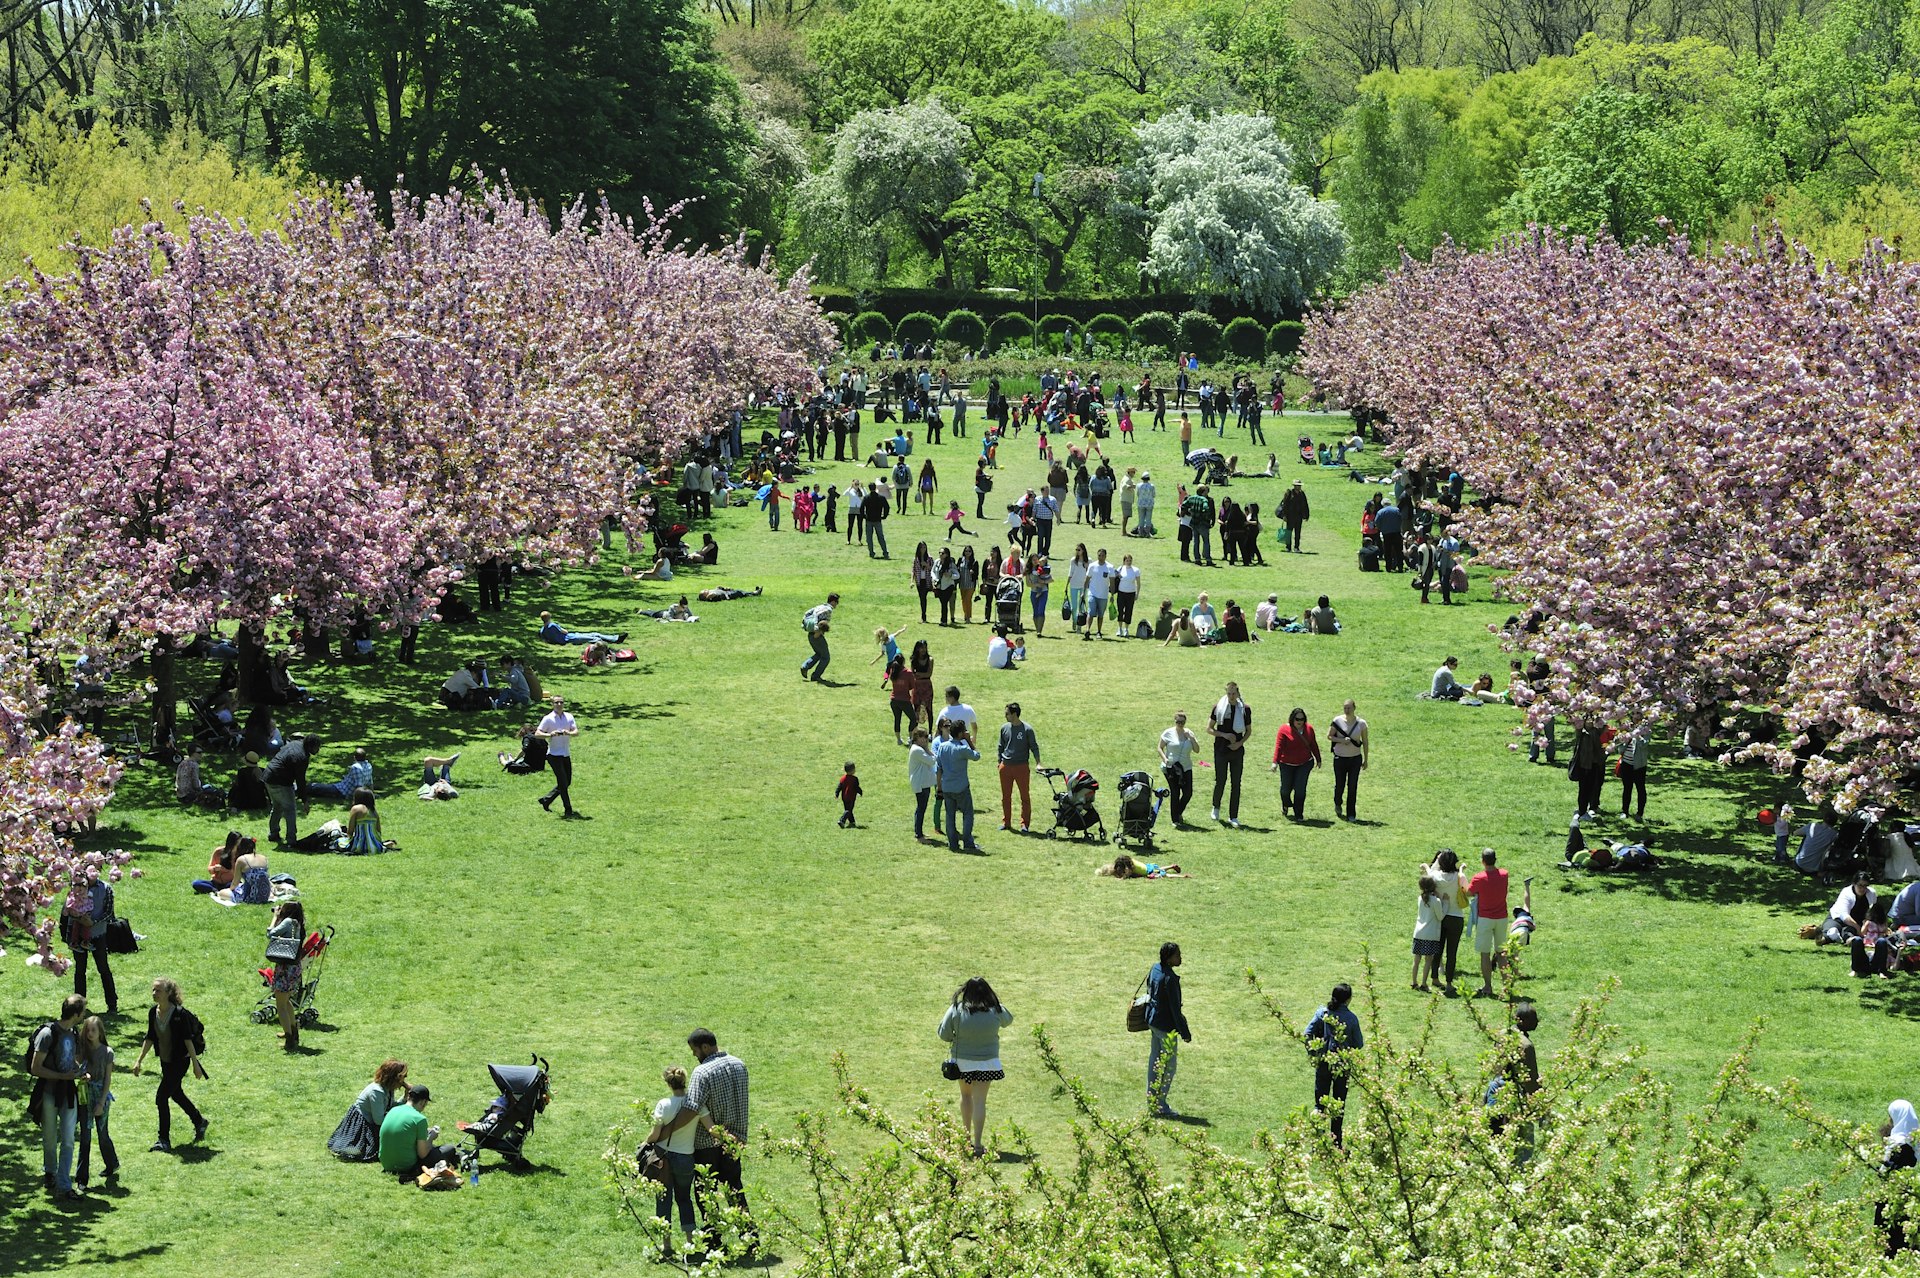 Pessoas sentam-se em um gramado em um dia ensolarado apreciando as flores cor-de-rosa das muitas cerejeiras próximas